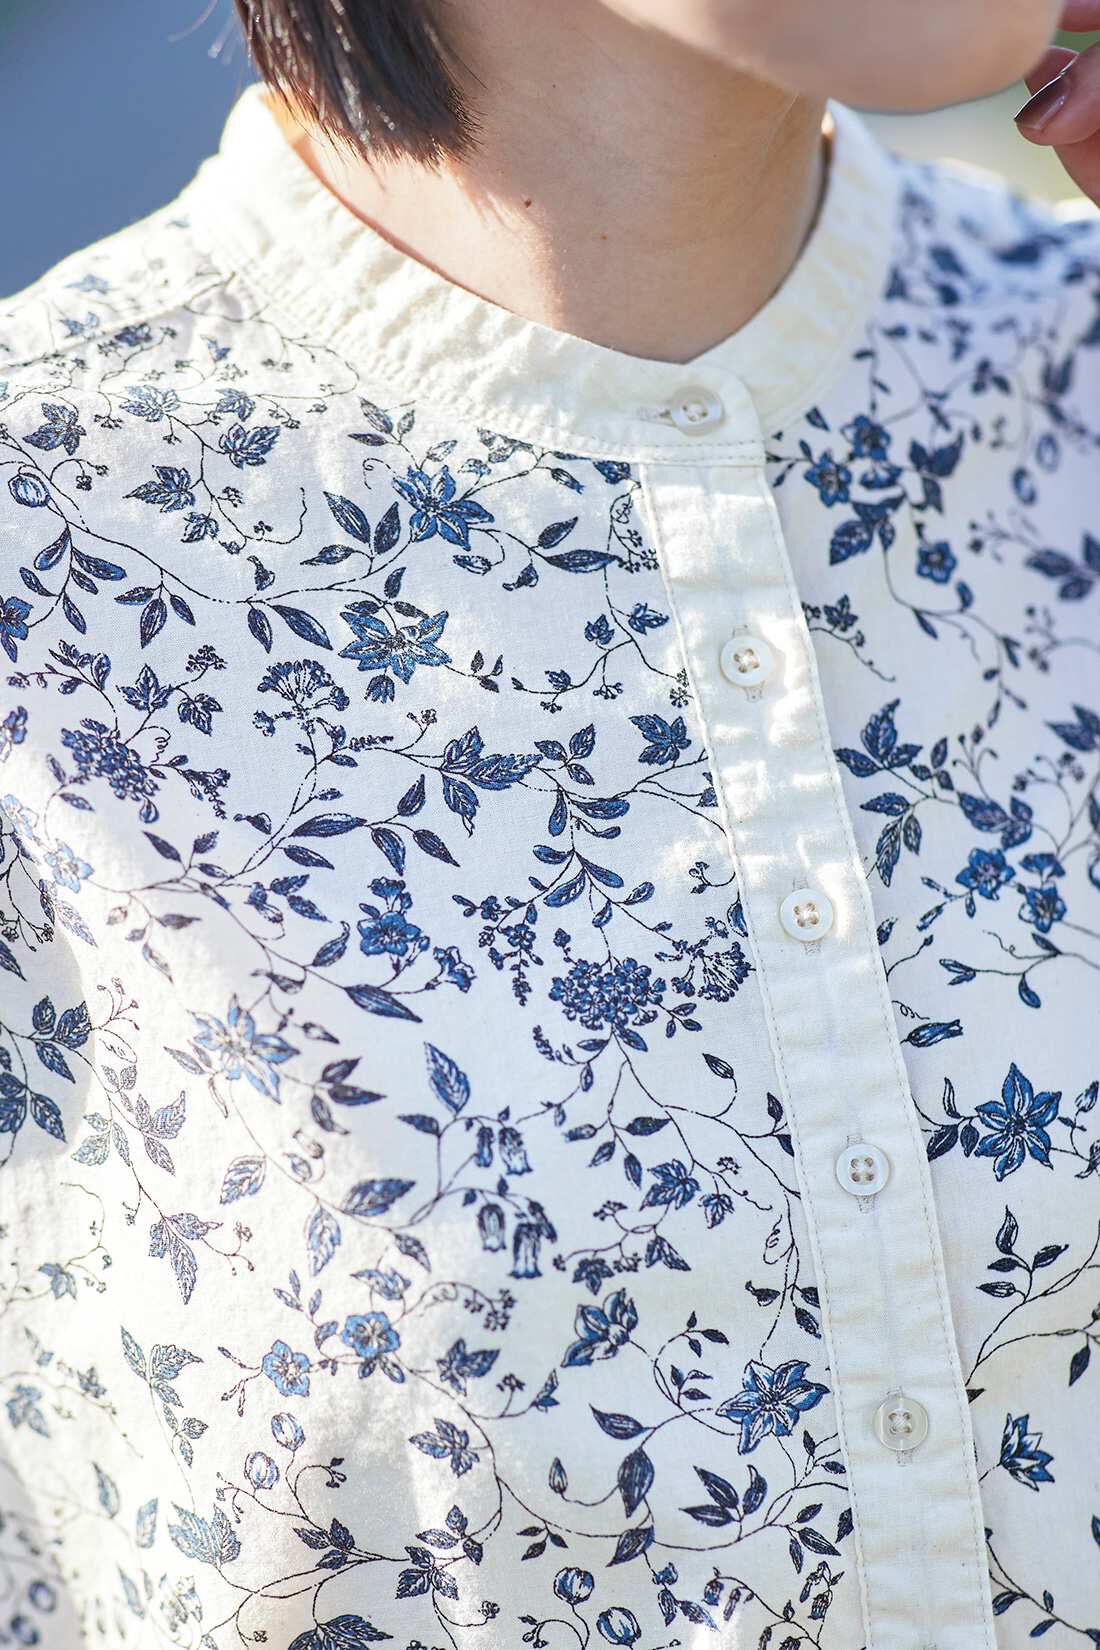 Sunny clouds|サニークラウズ ツルの絡まるシャツ〈レディース〉|植物モチーフの涼しげなブルー系プリント。